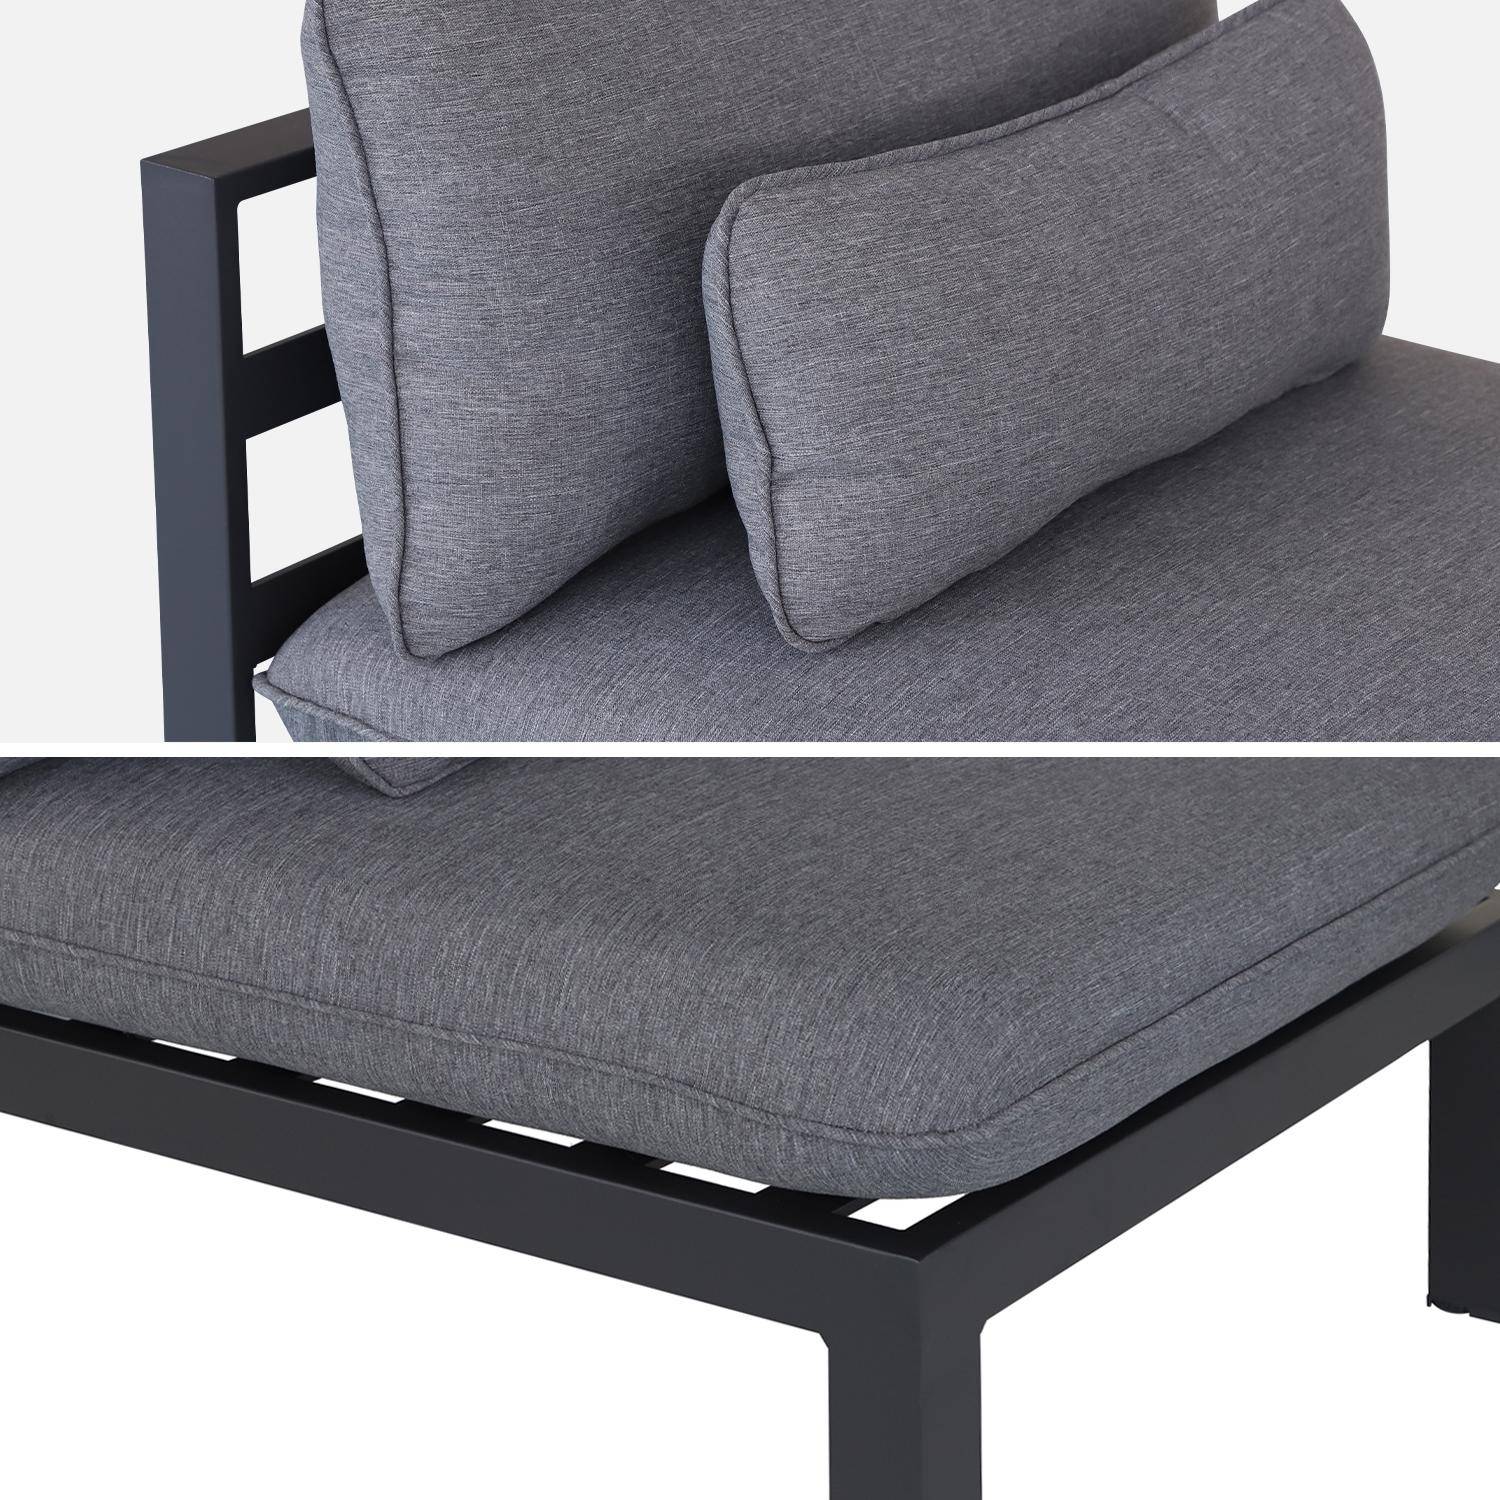 Conjunto de muebles de jardín de aluminio 4 plazas - asientos profundos - Rieti - gris antracita,sweeek,Photo7